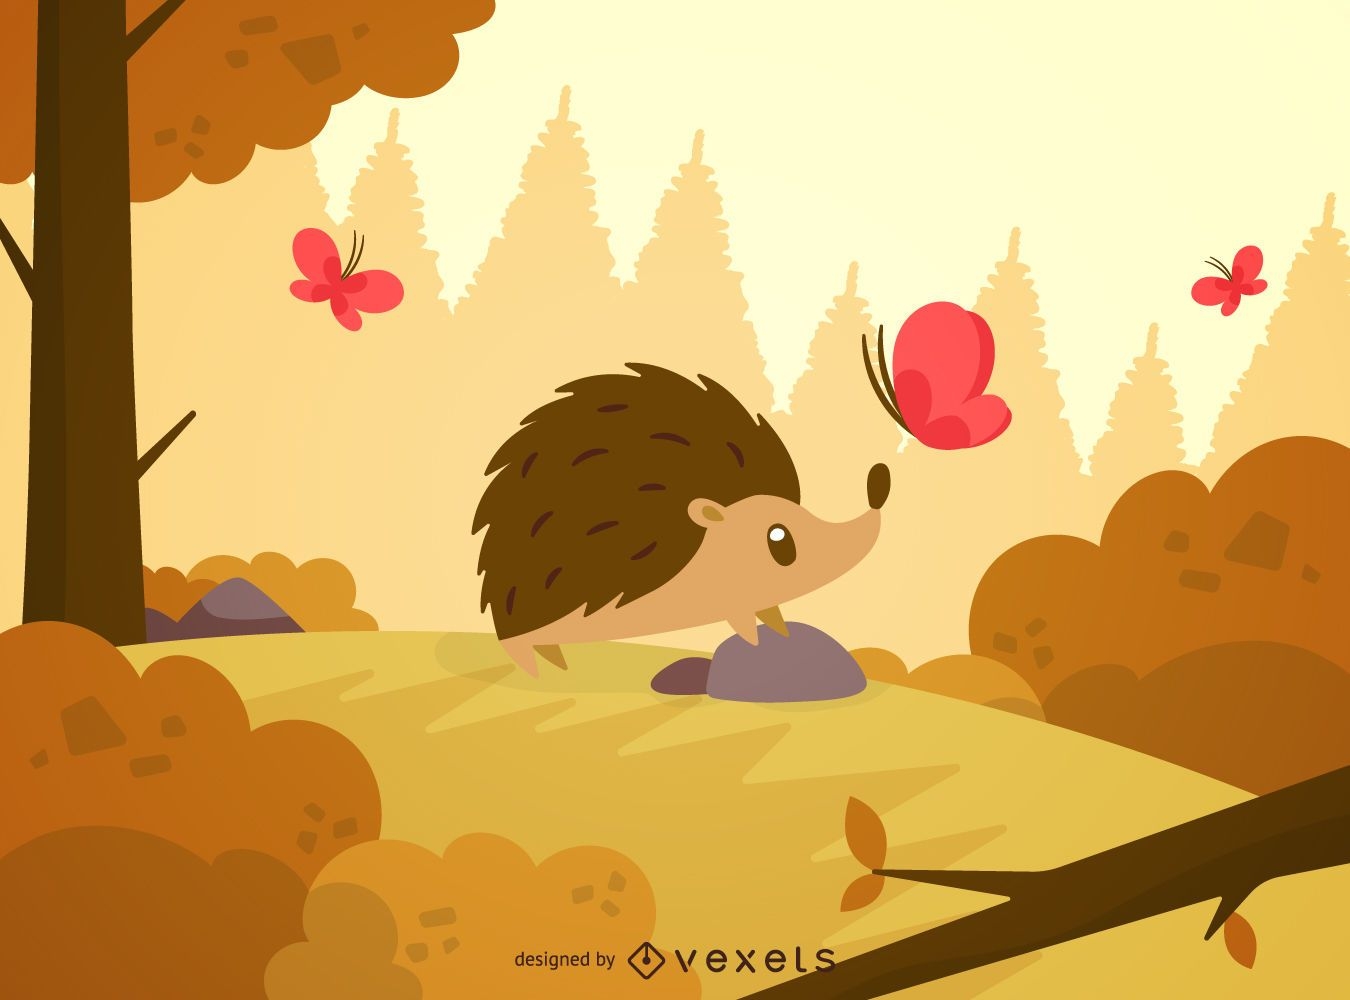 Hedgehog in forest landscape illustration